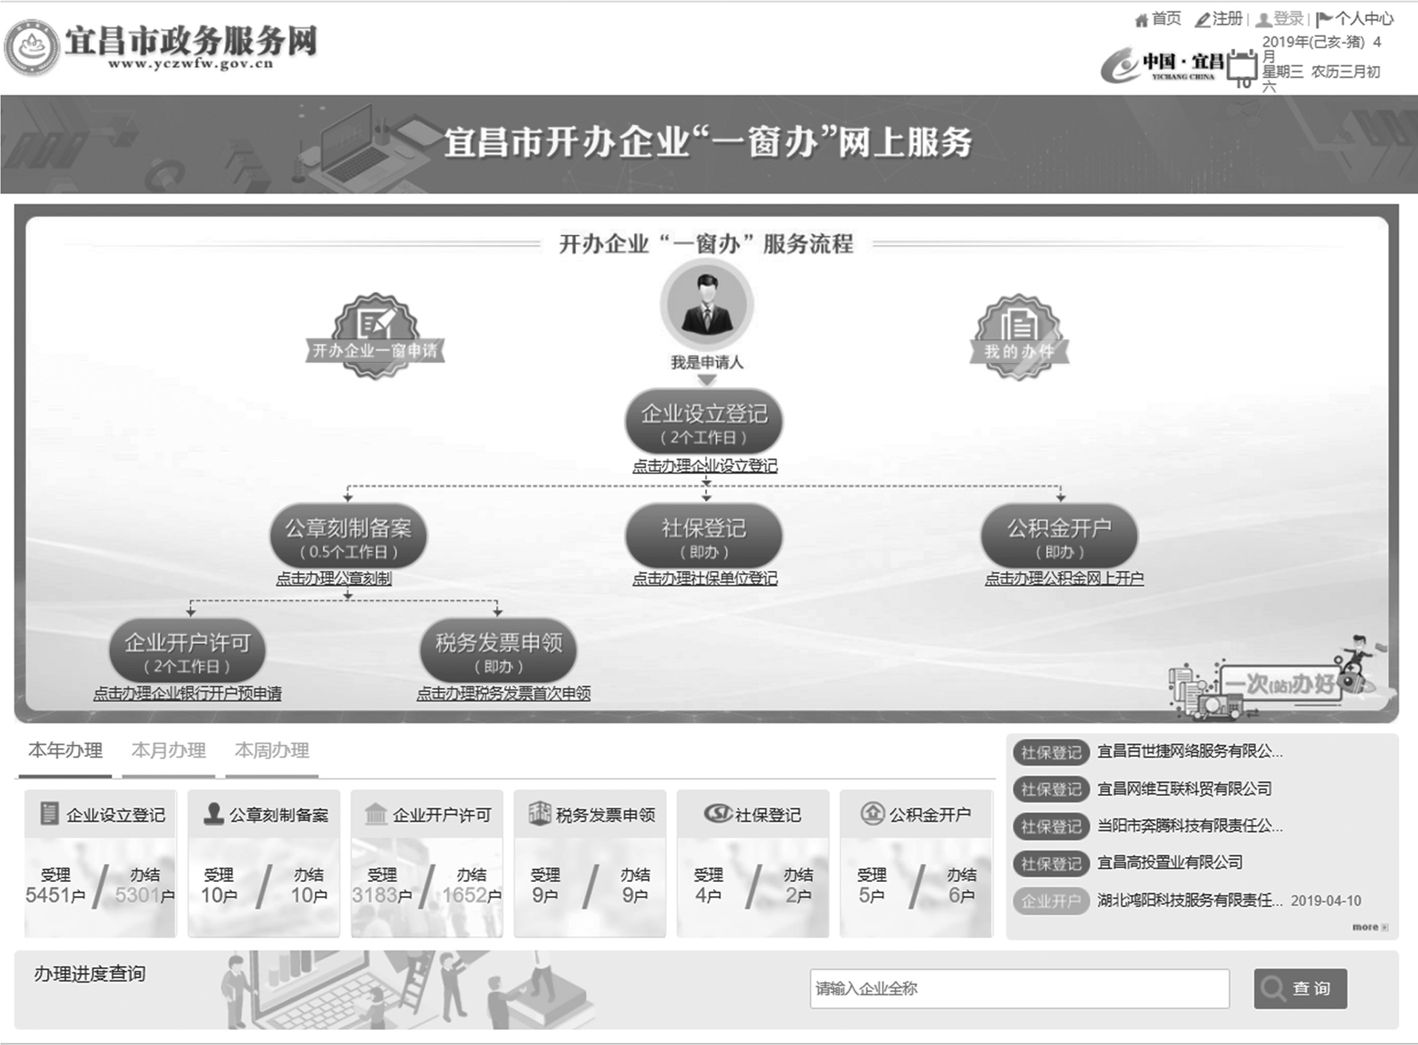 图2 宜昌市开办企业“一窗办”服务流程